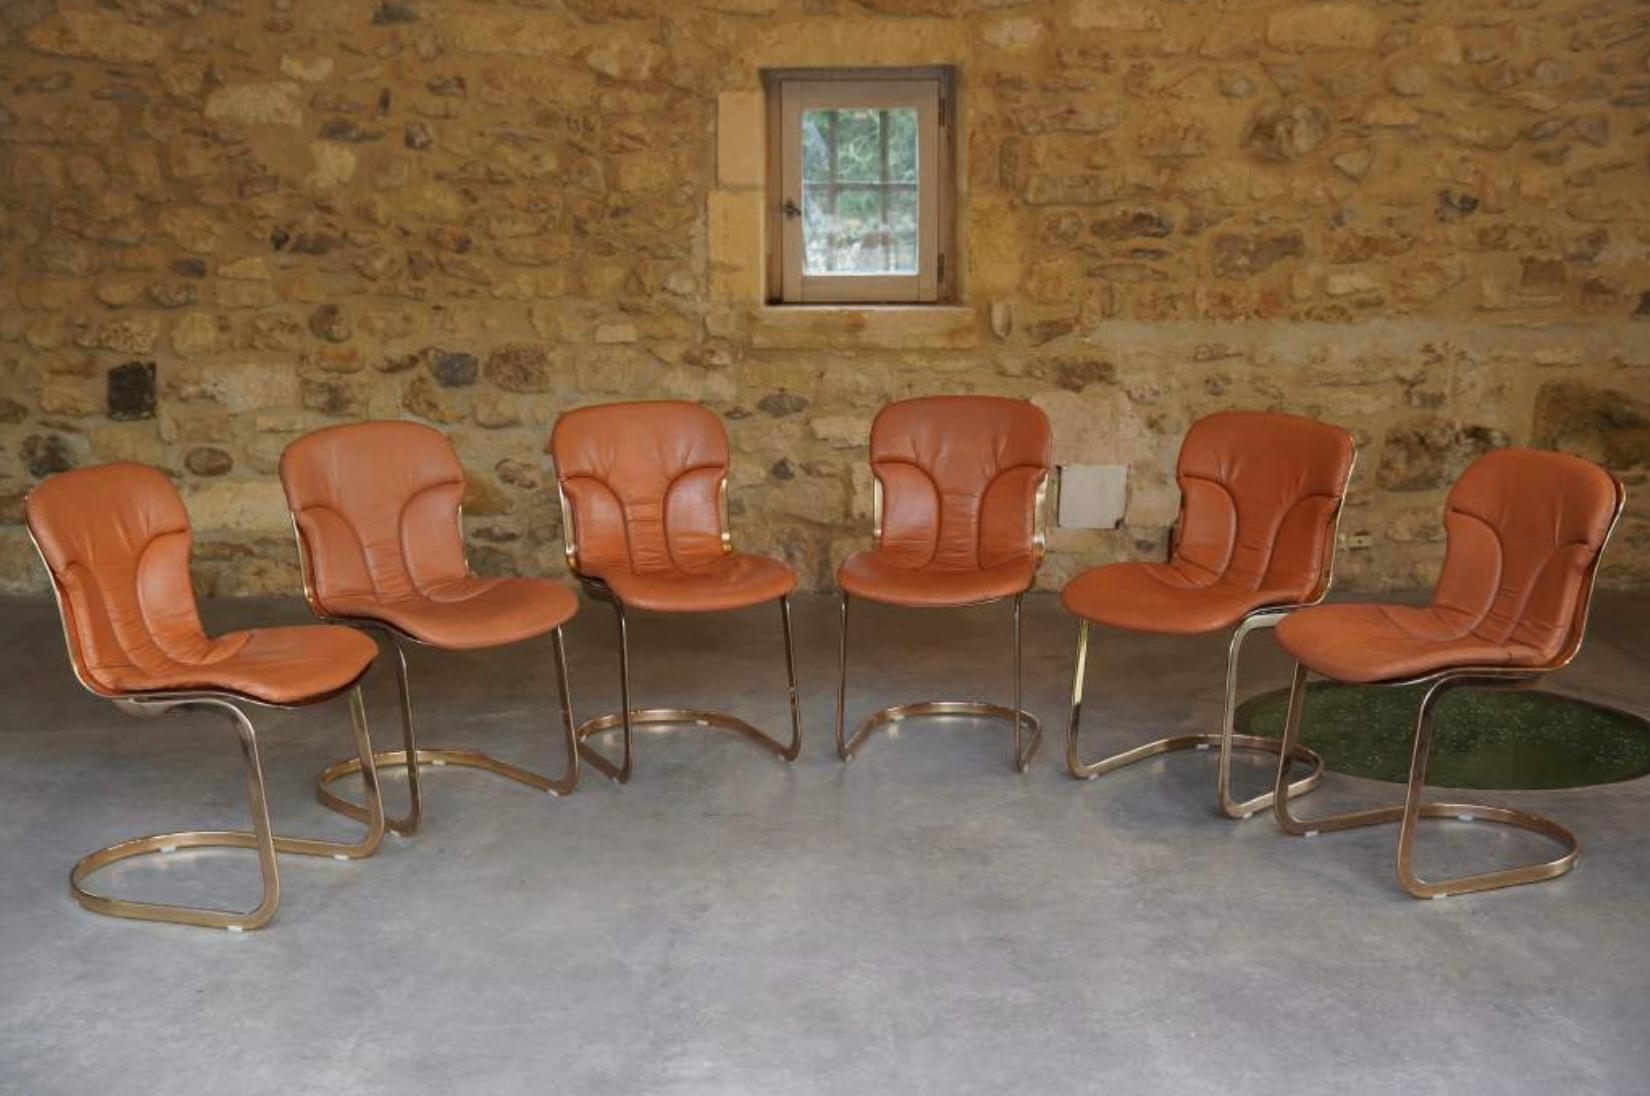 Ensemble chic de 6 chaises assorties en cuir brun cognac, conçu par Willy Rizzo pour Cidue, Italie, années 1970.

Le tout en excellent état vintage. Excellente patine du cuir correspondant à l'âge. La chaise repose sur des pieds cantilever en